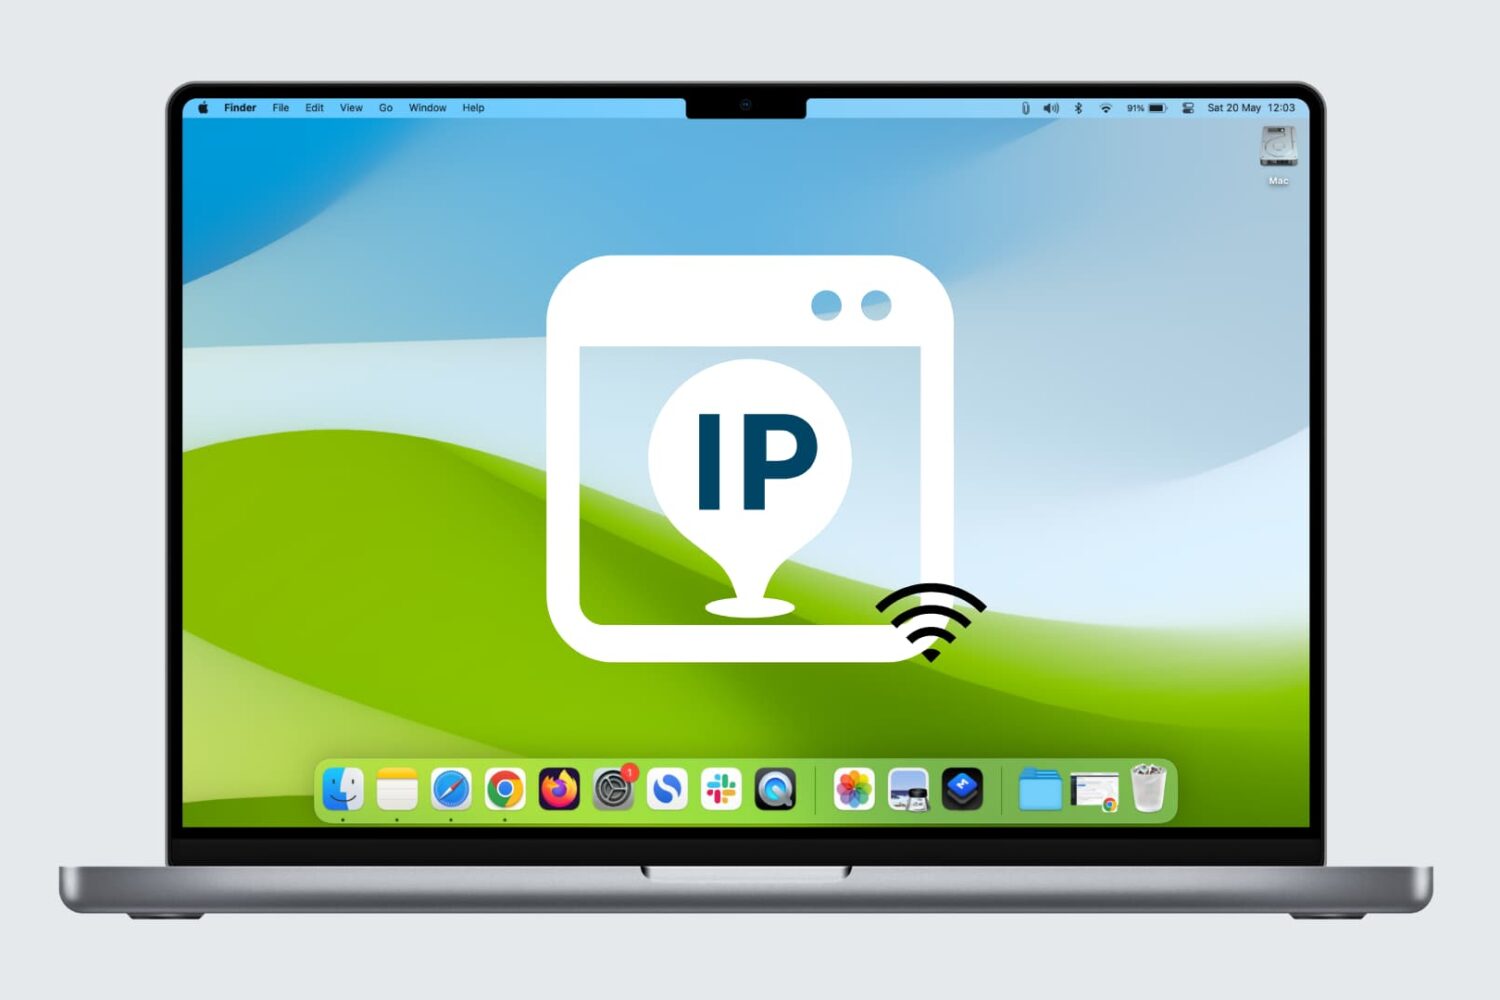 Mac's Wi-Fi IP address